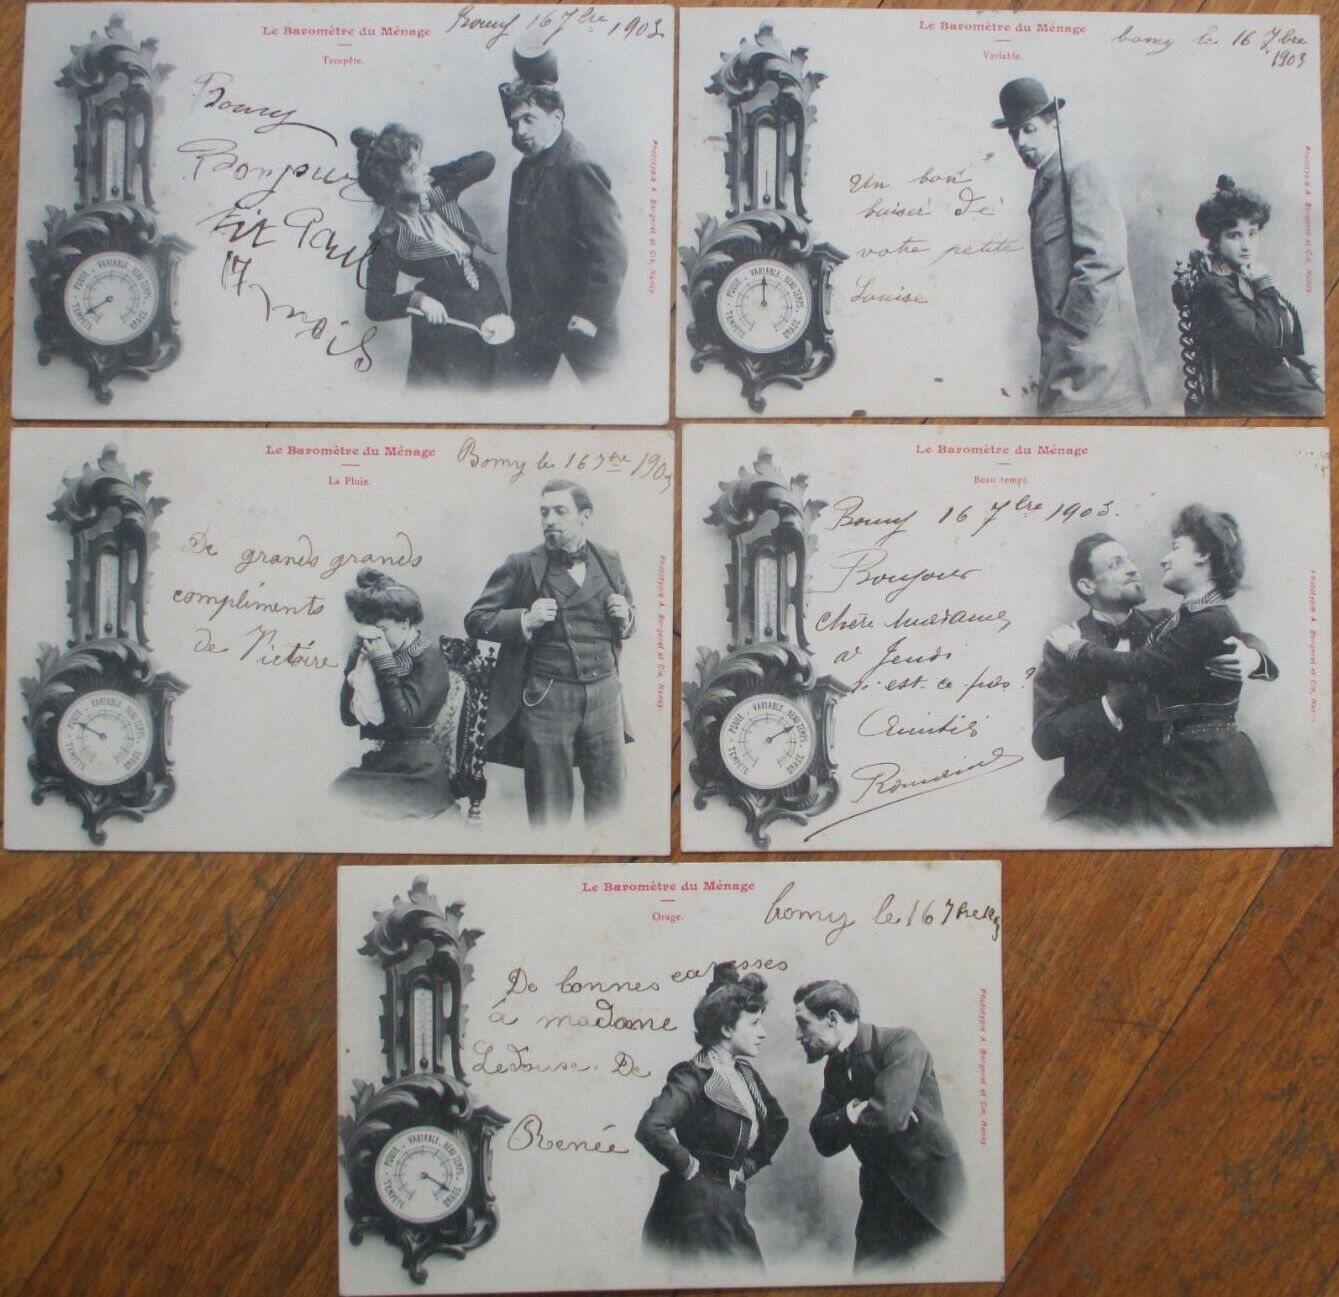 Bergeret Barometer/Barometre du Menage 1903 SET OF FIVE French Fantasy Postcards